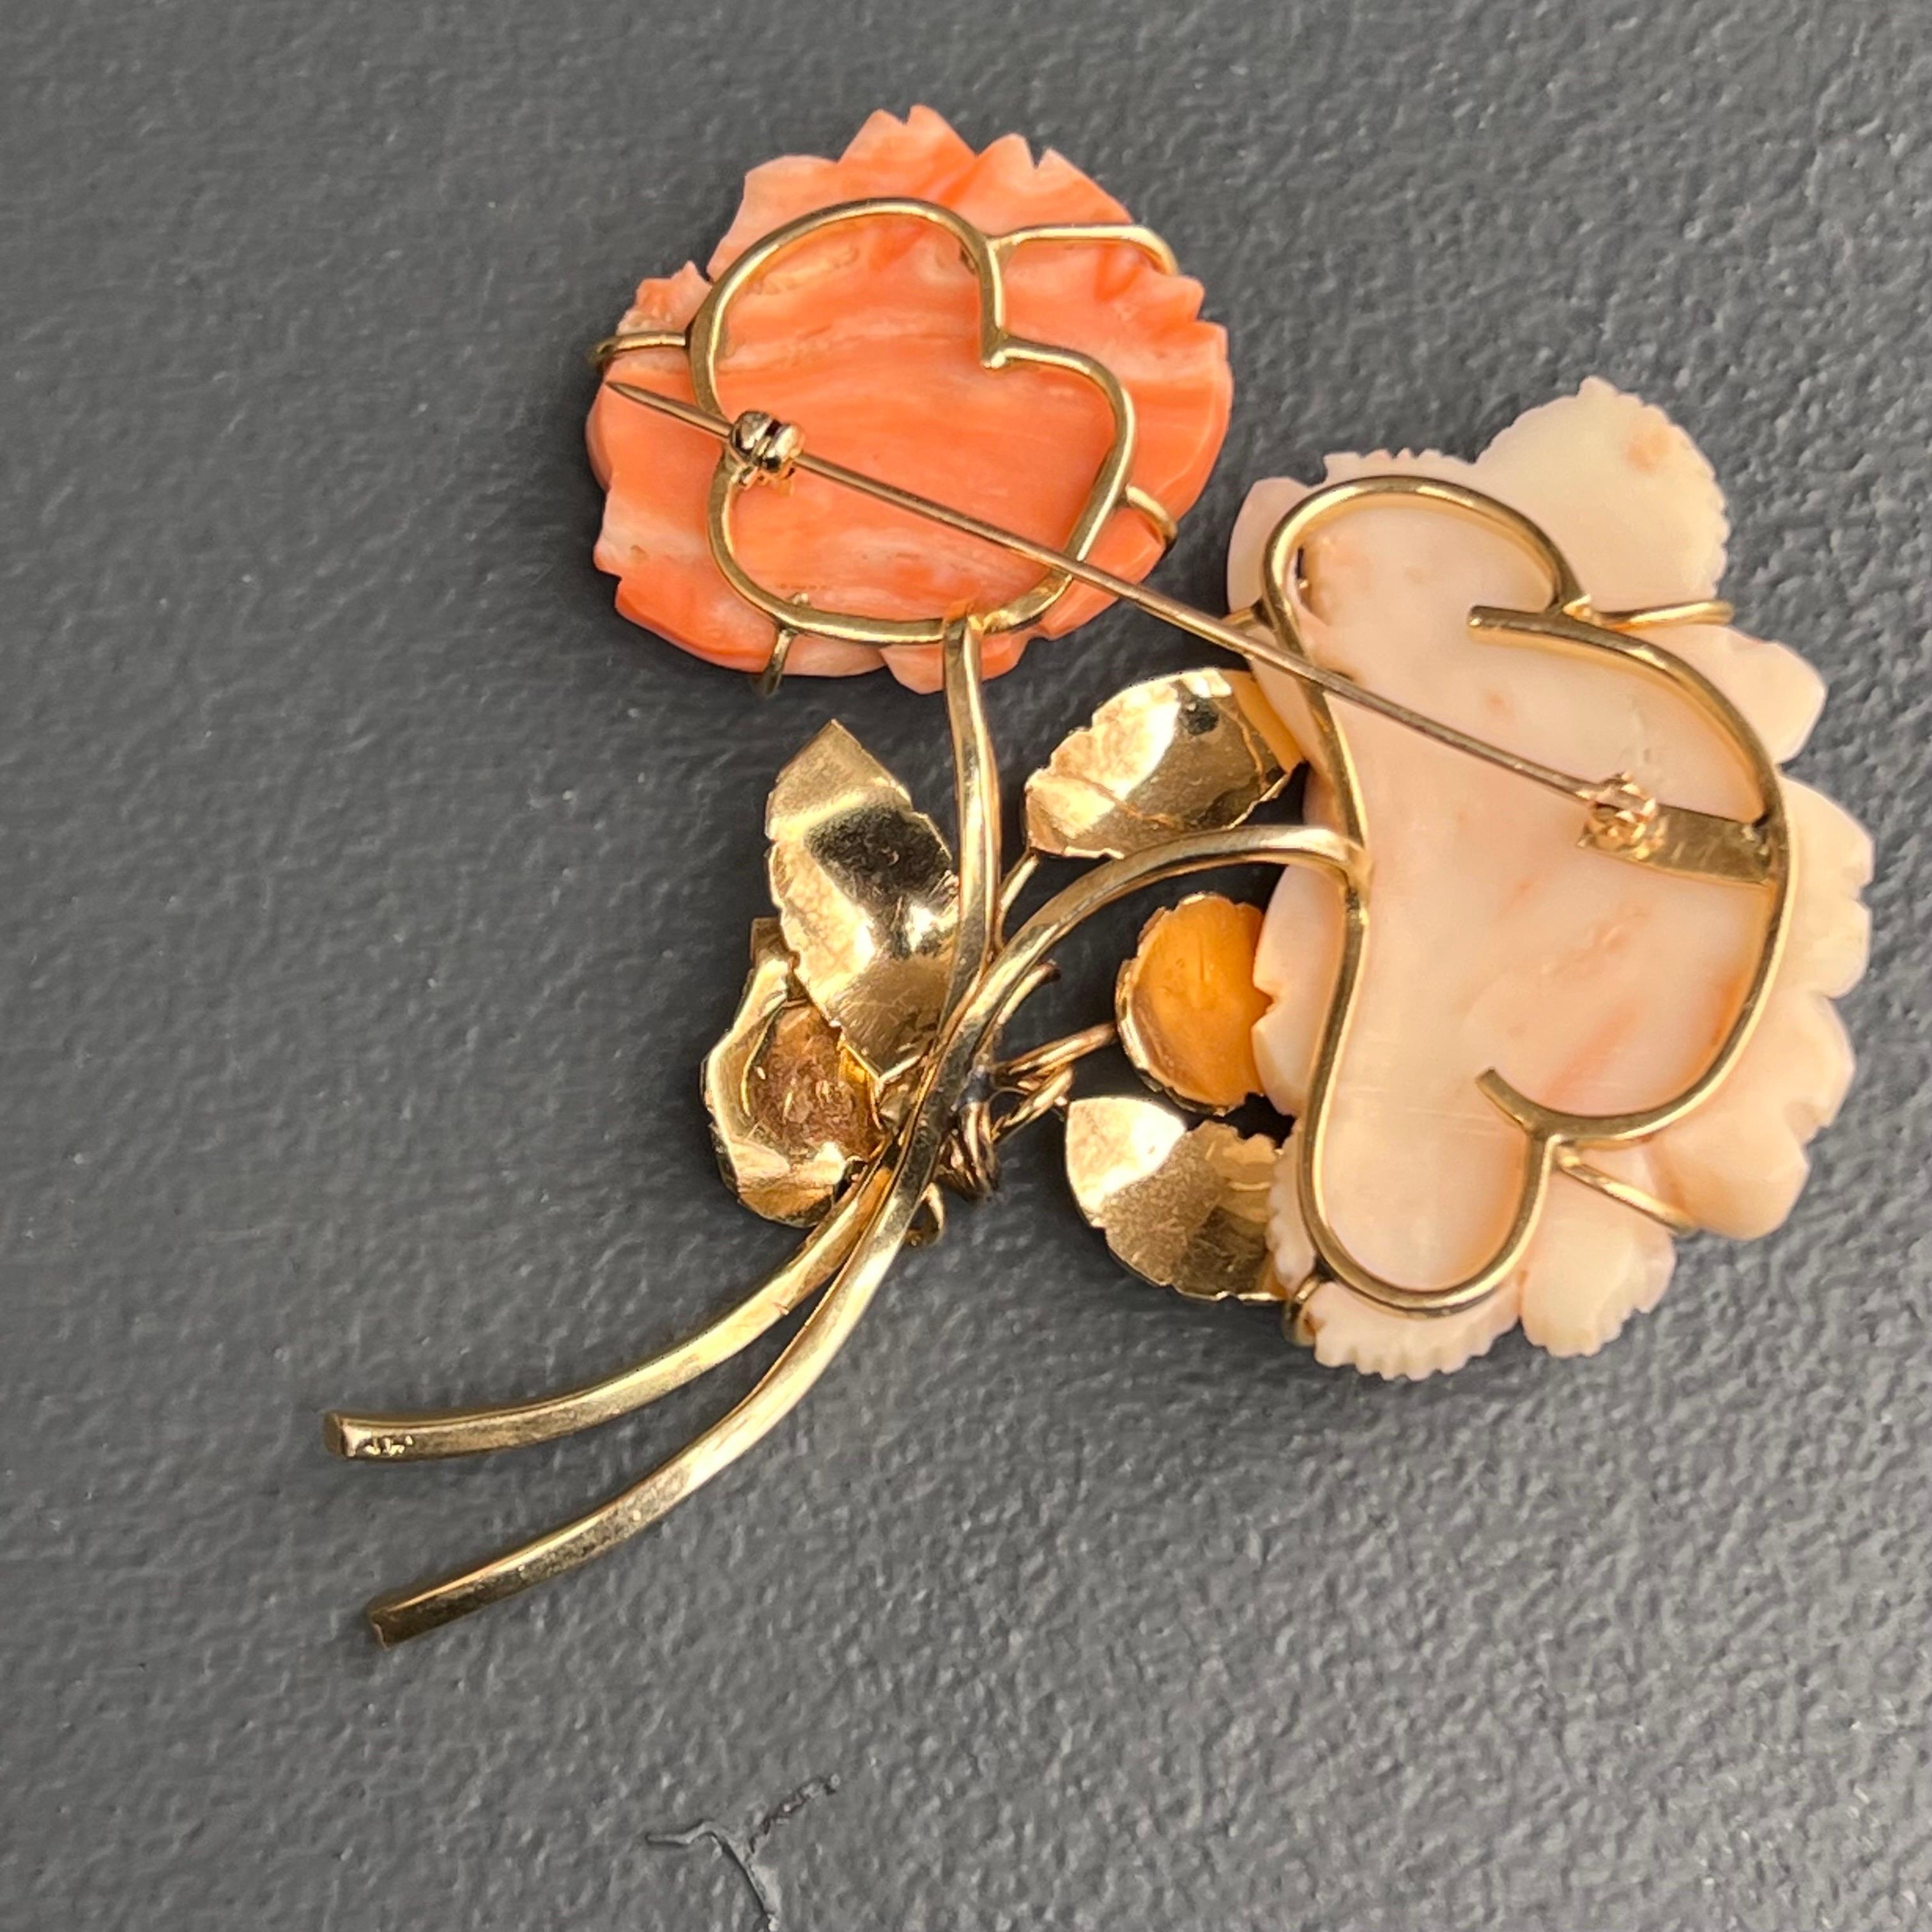 Large 14 Karat Gold Carved Coral Rose Floral Pin Brooch For Sale 2